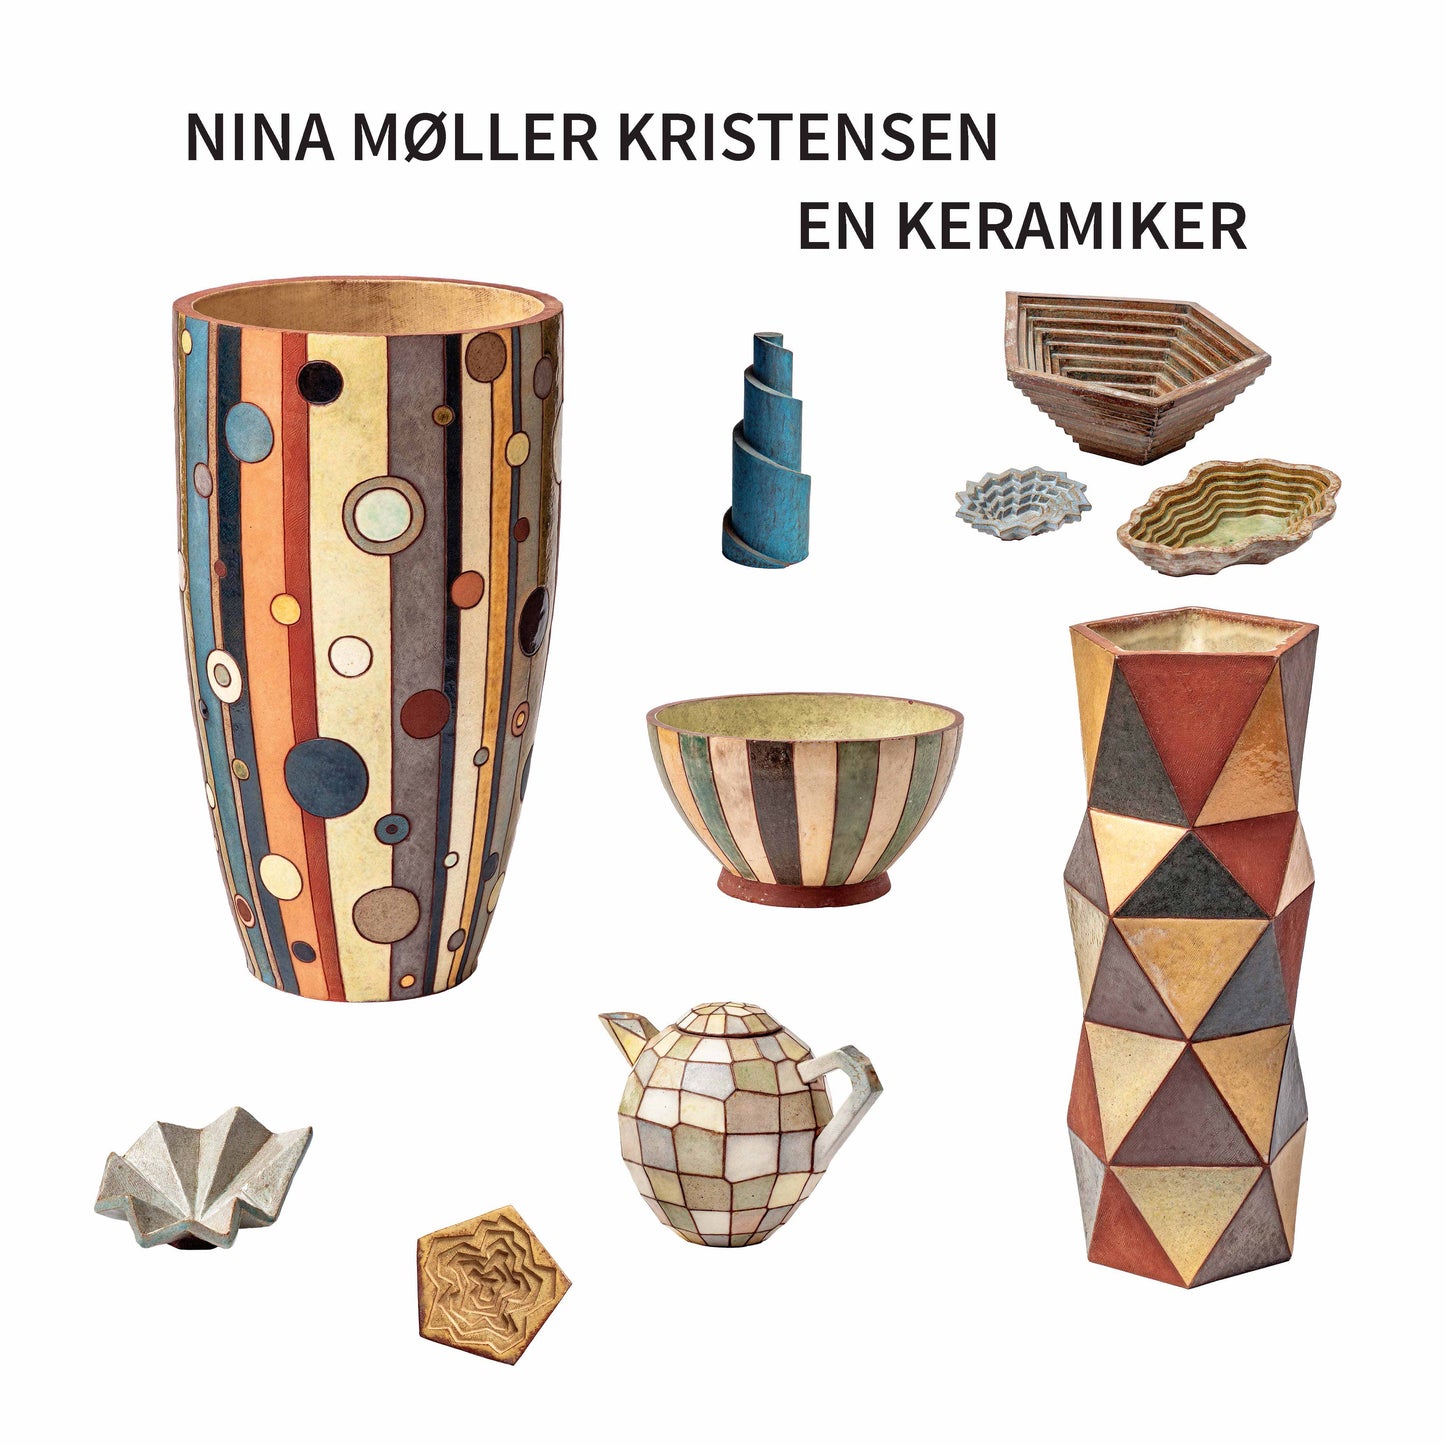 Nina Møller Kristensen